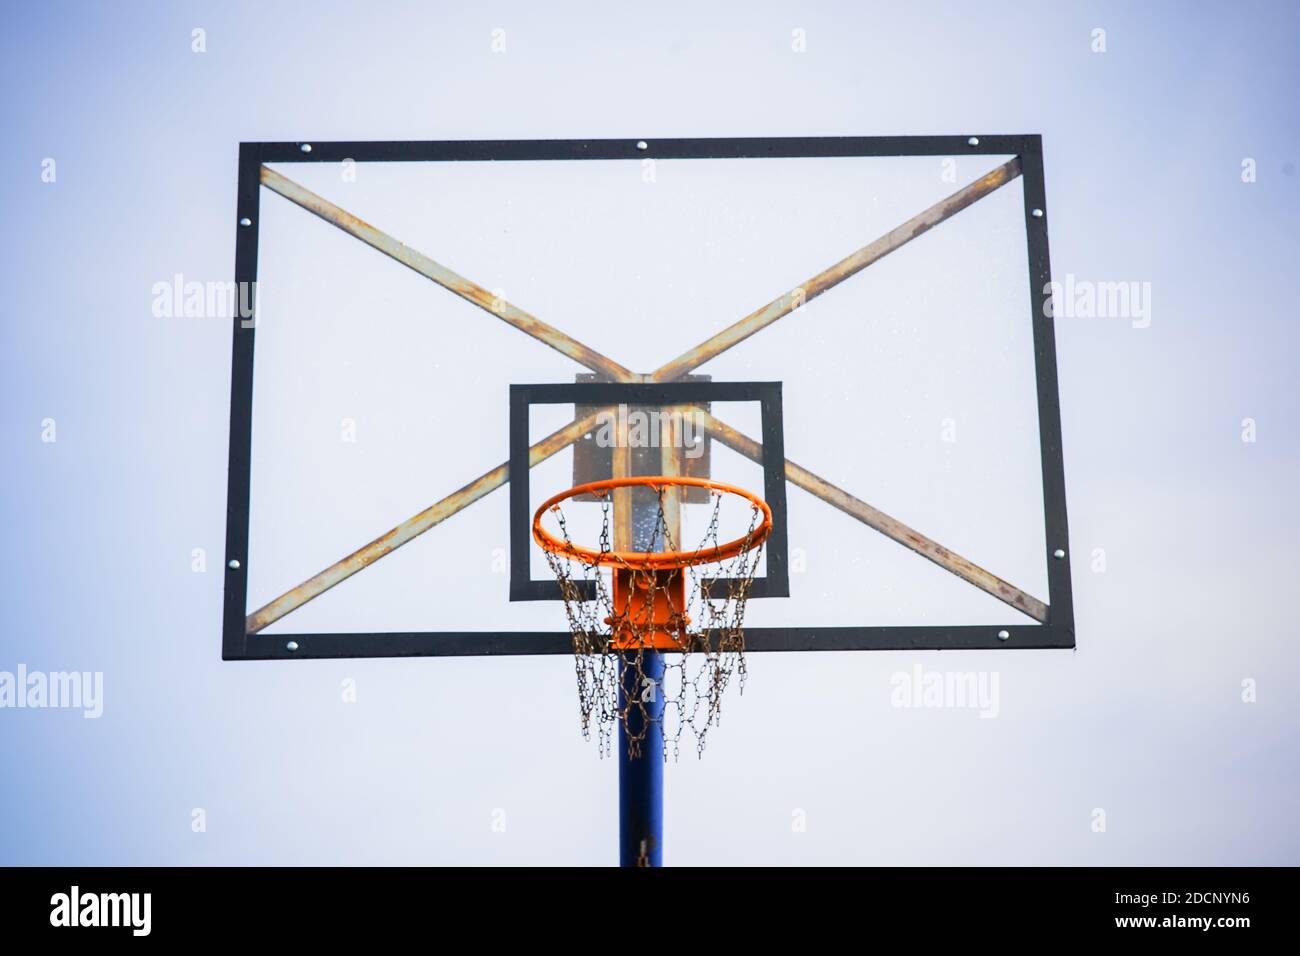 Panier de basket-ball avec plateau transparent et chaînes au lieu de filet contre le ciel bleu clair pendant l'après-midi de un angle inférieur avant Banque D'Images